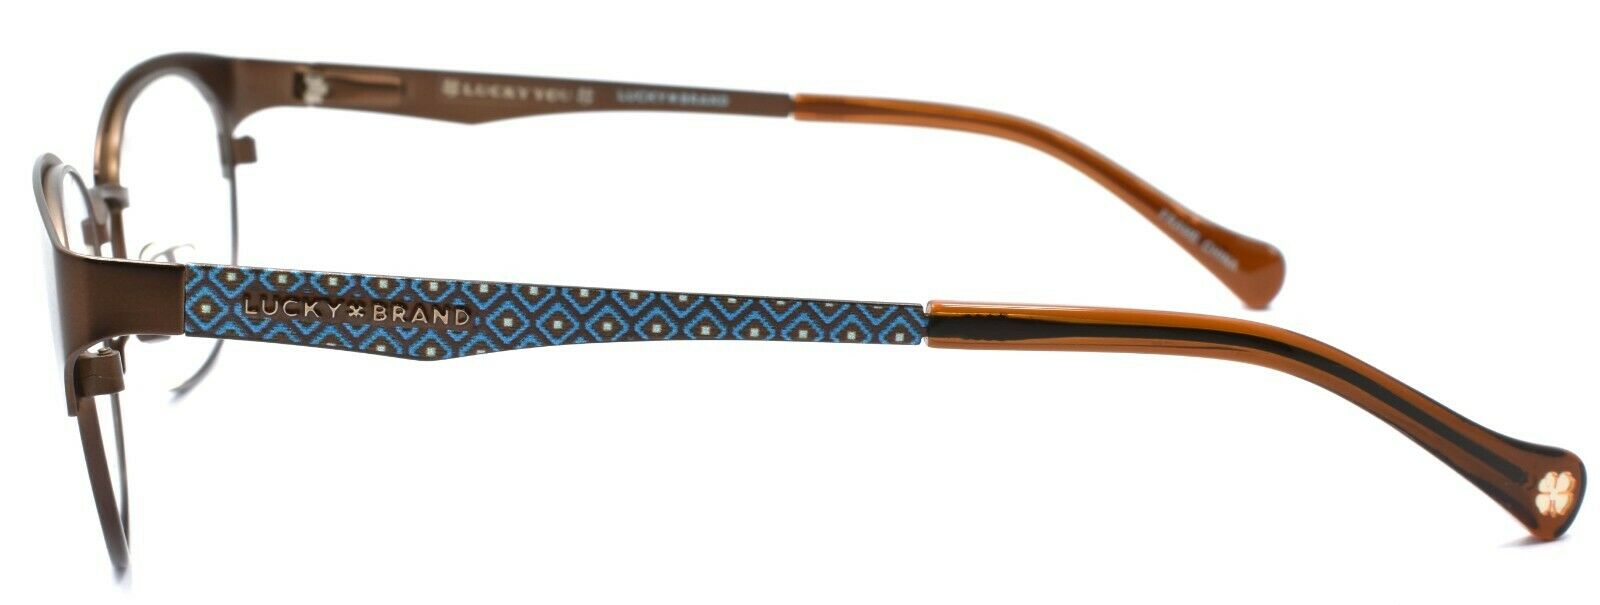 3-LUCKY BRAND D103 Women's Eyeglasses Frames 50-18-135 Brown + CASE-751286281712-IKSpecs